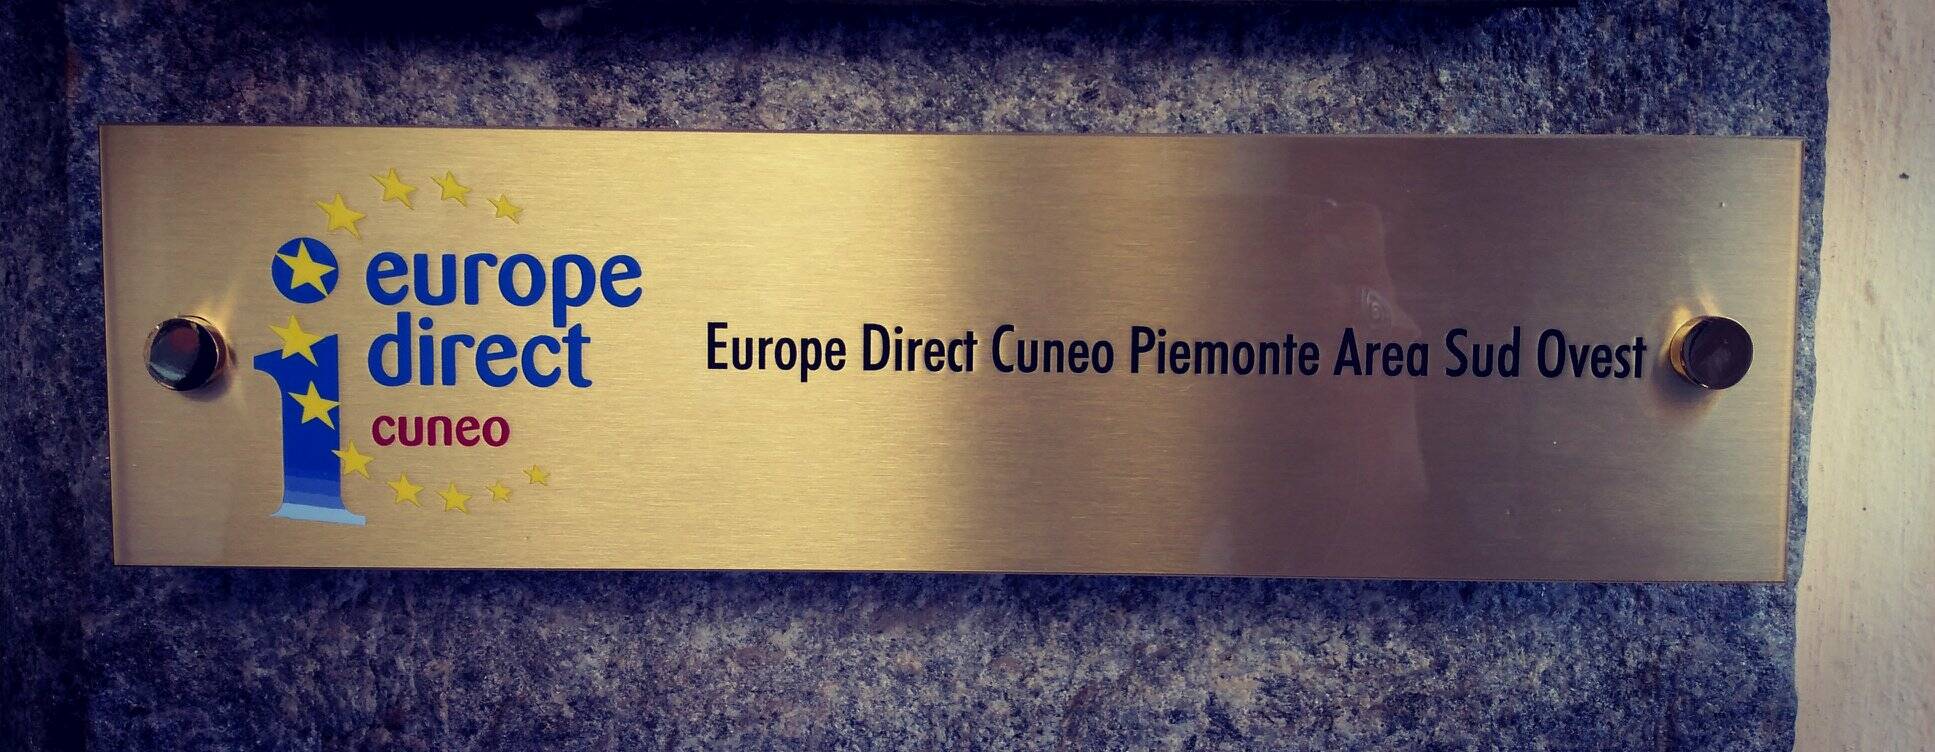 Centro Europe Direct Cuneo Piemonte